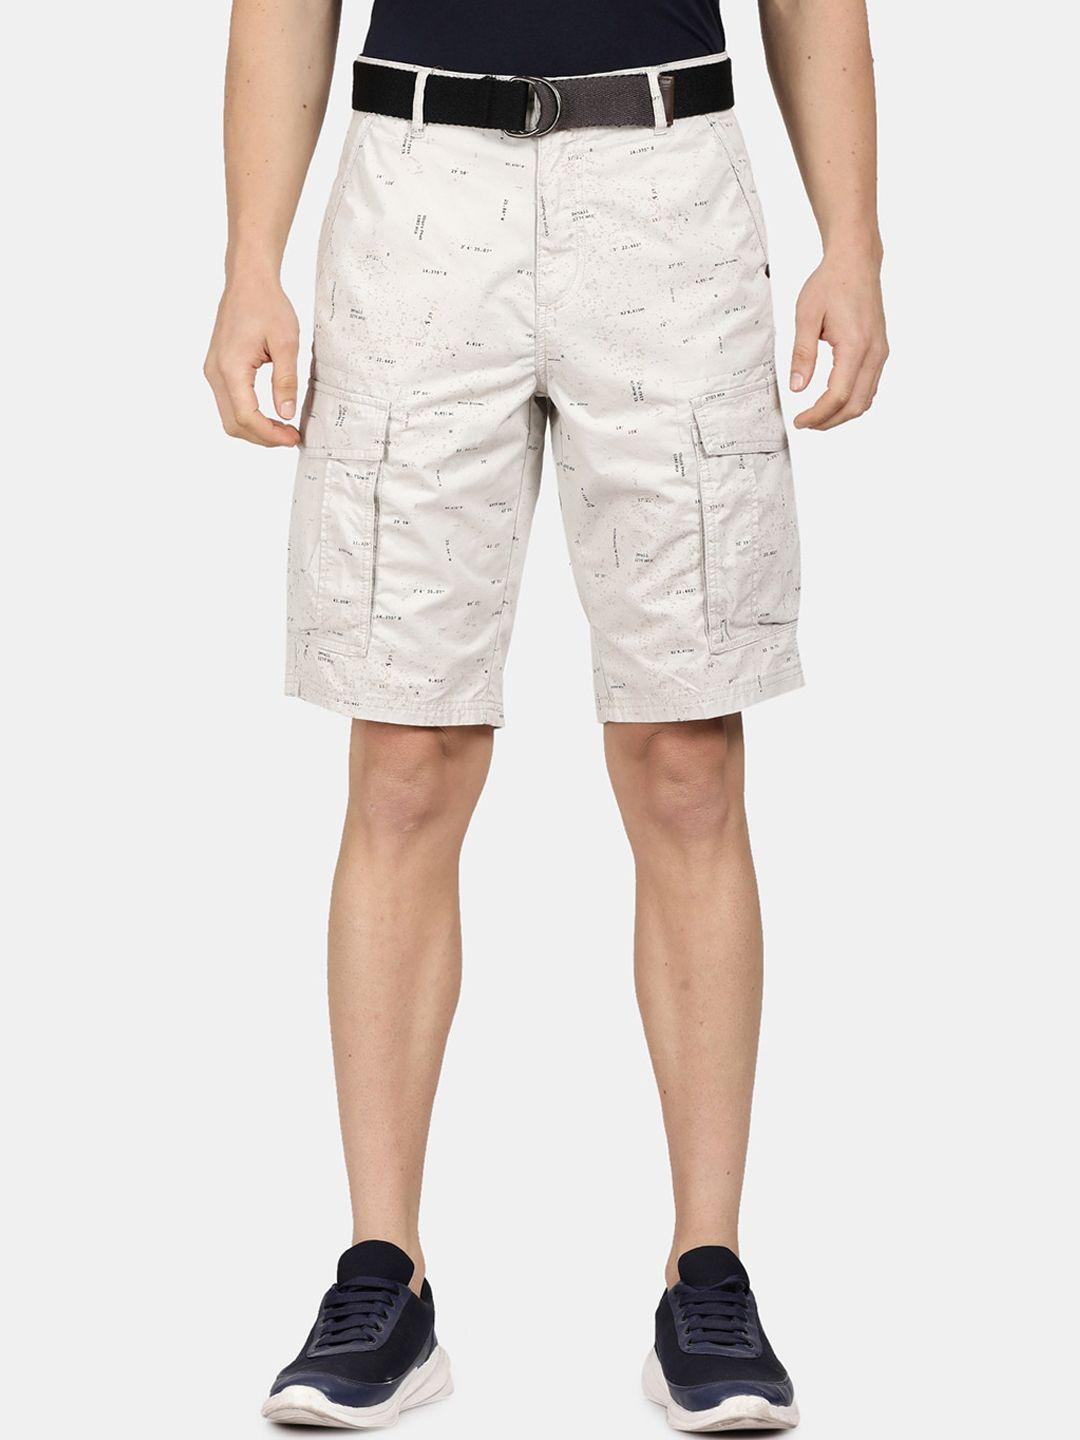 t-base men printed cargo shorts